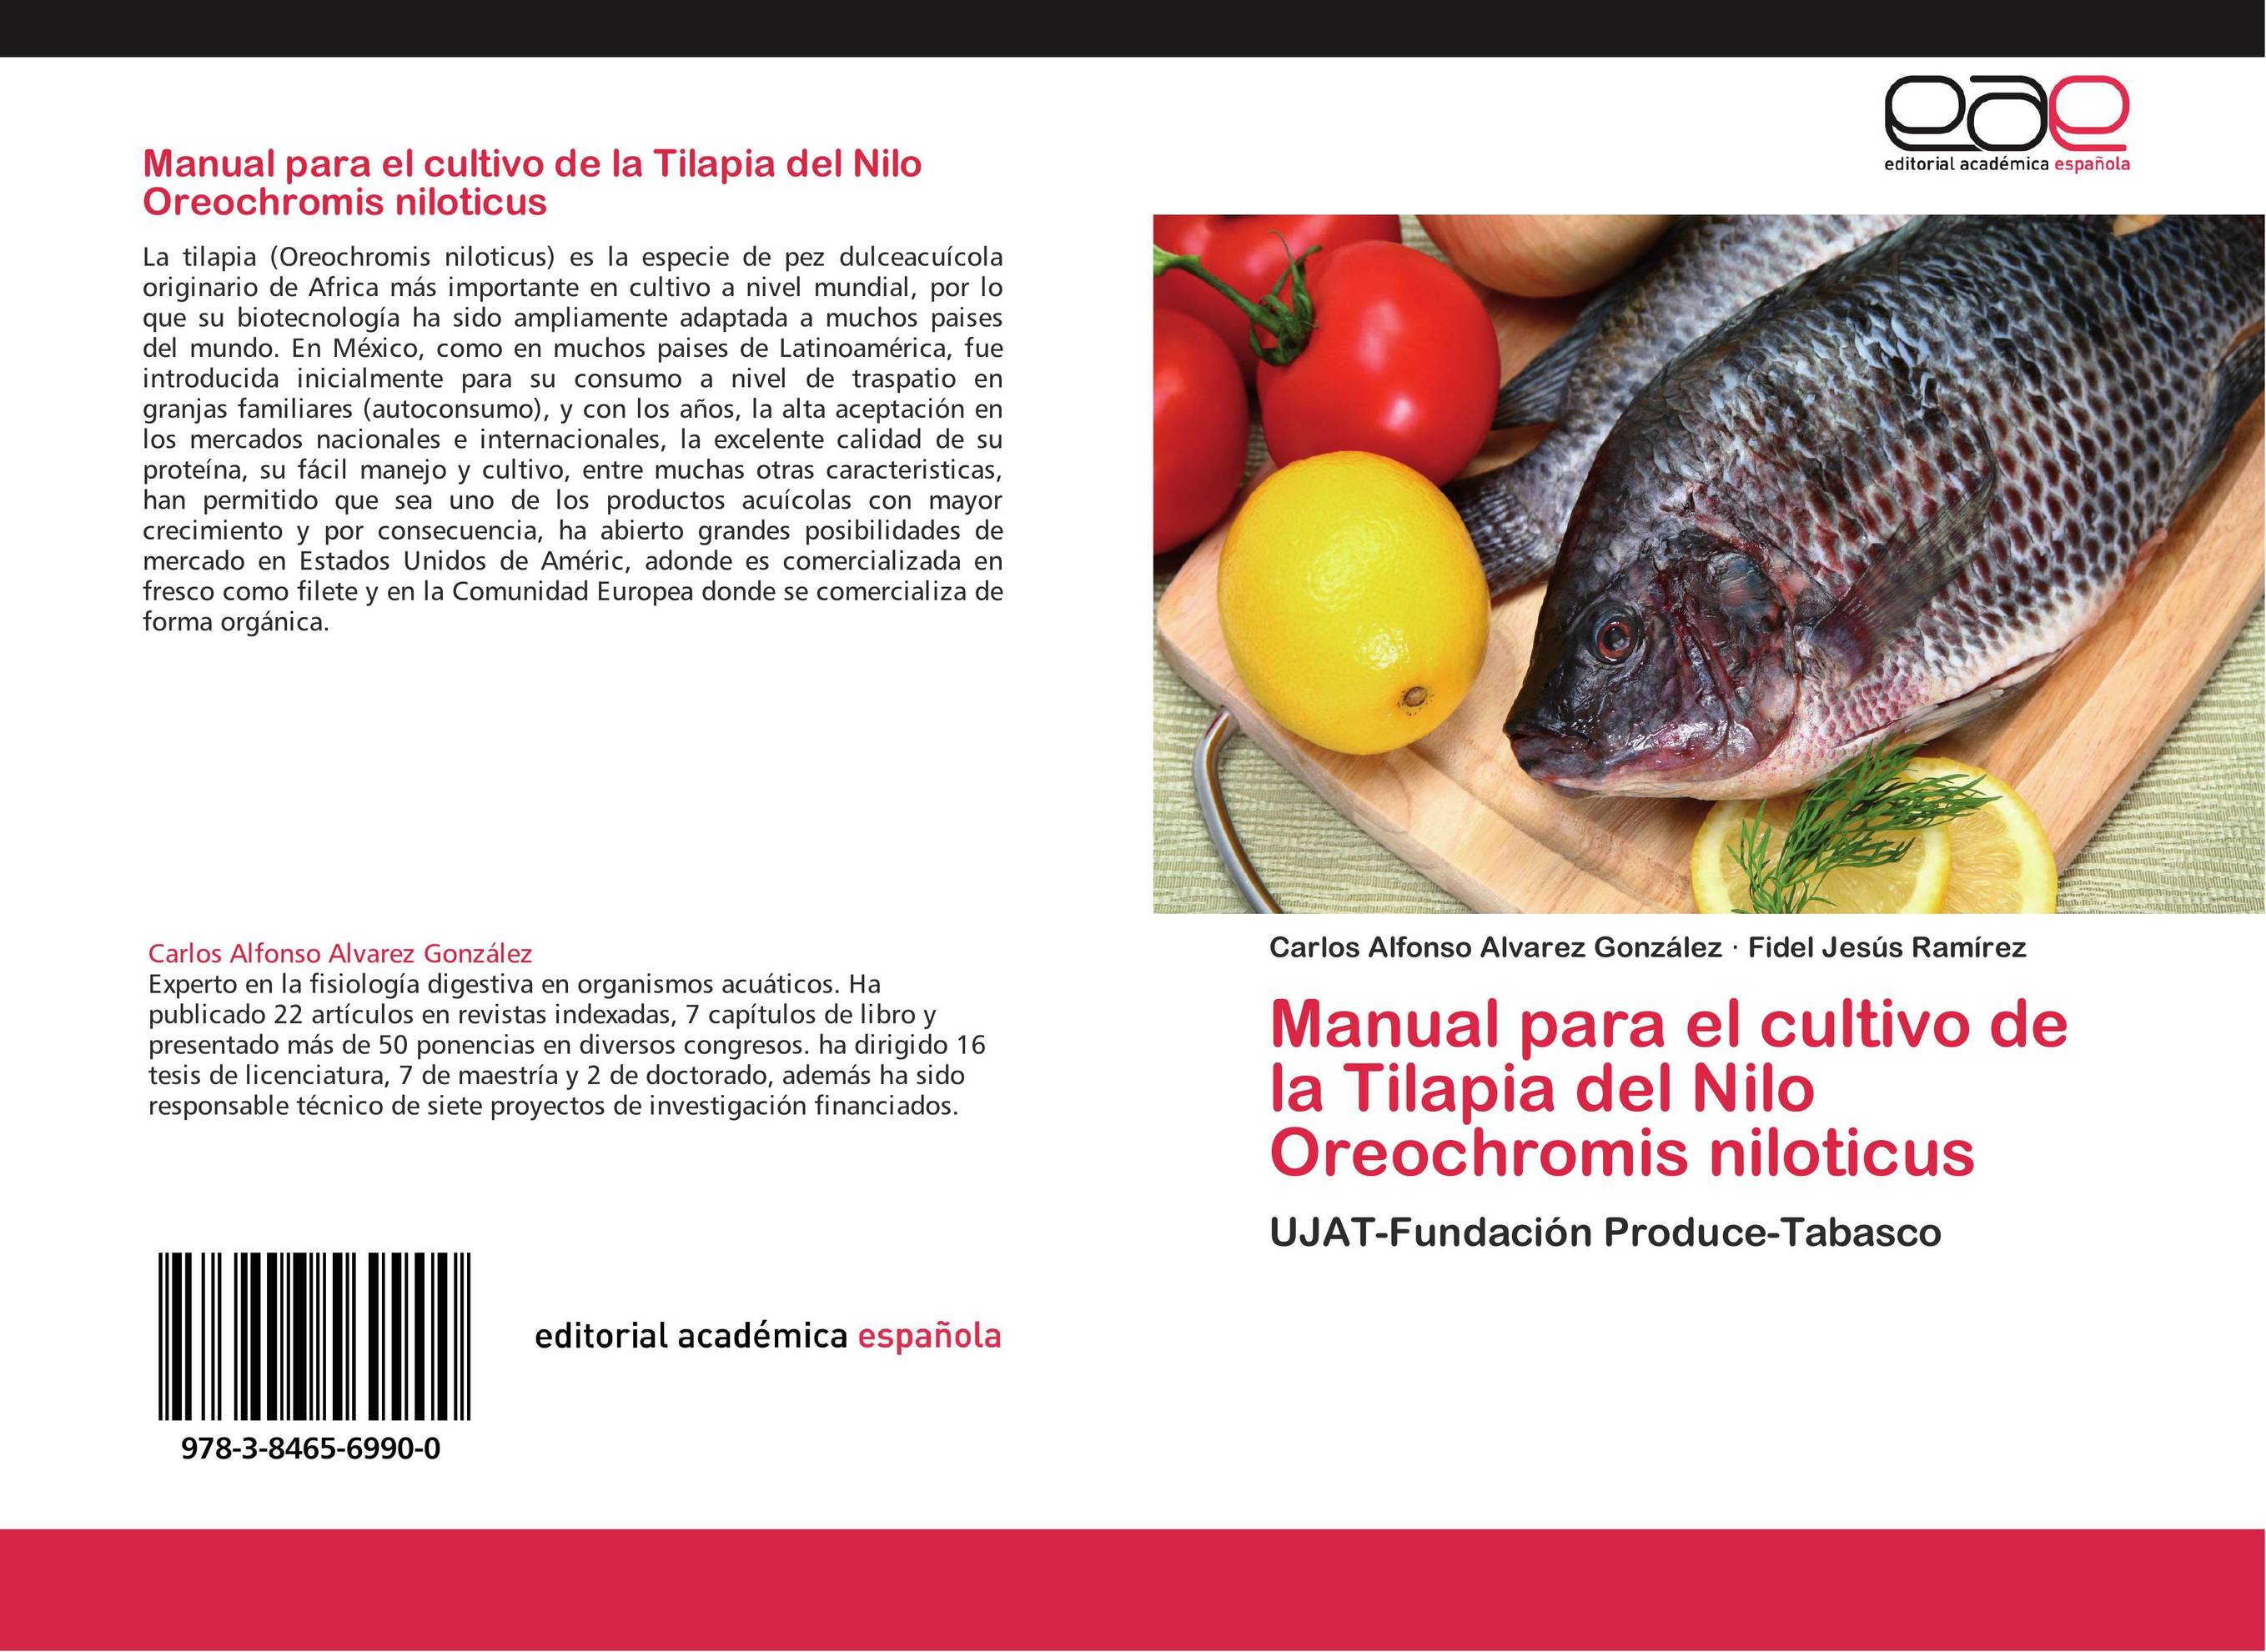 Manual para el cultivo de la Tilapia del Nilo Oreochromis niloticus